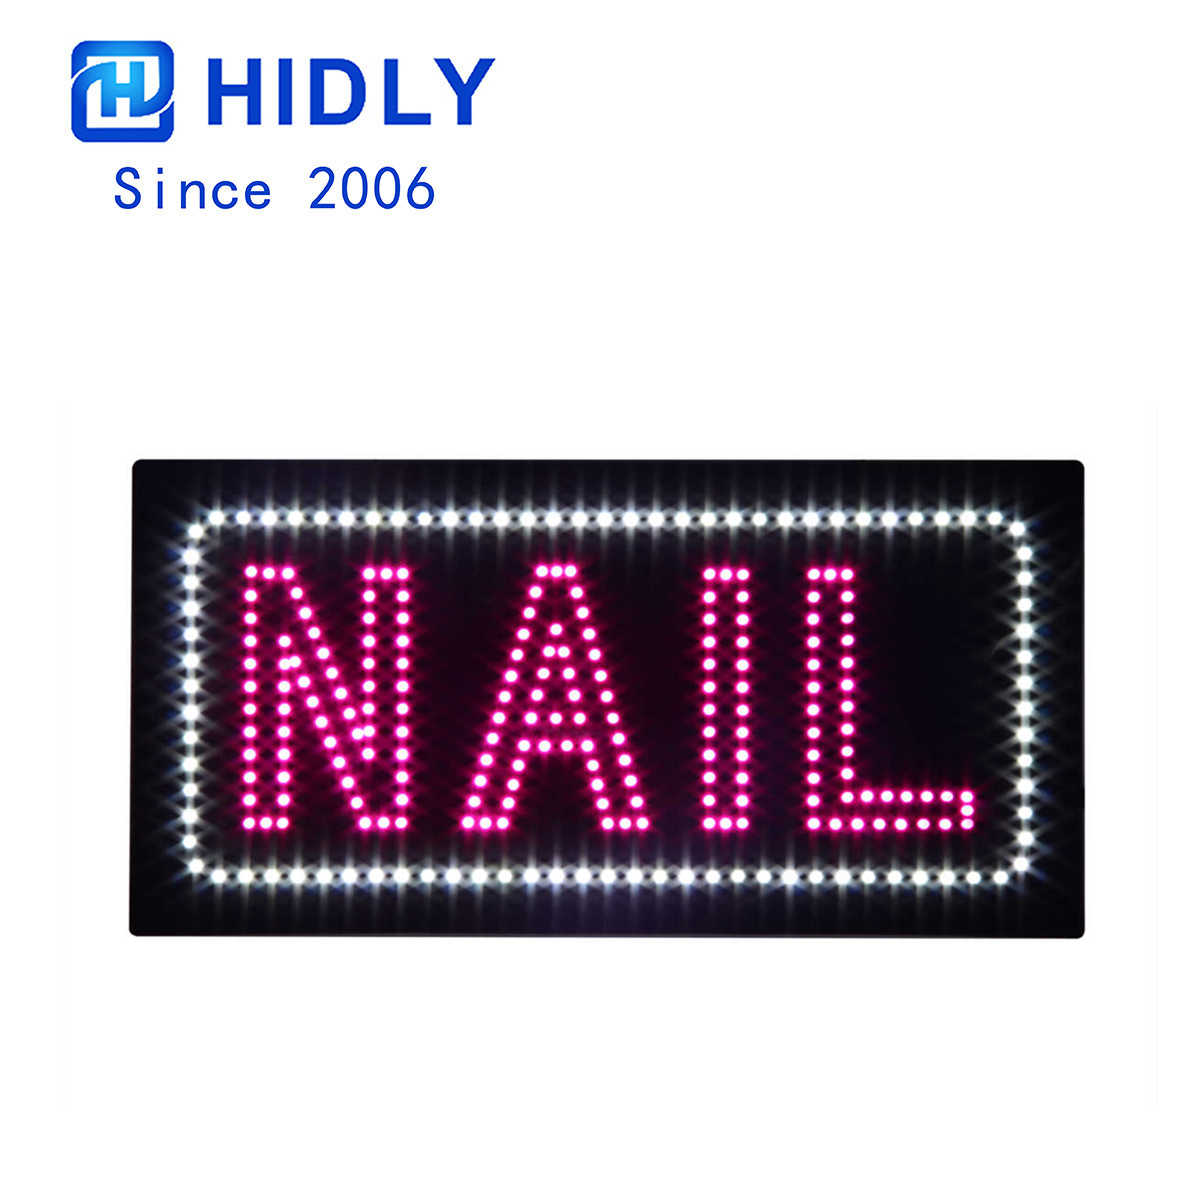 Nails animated led sign